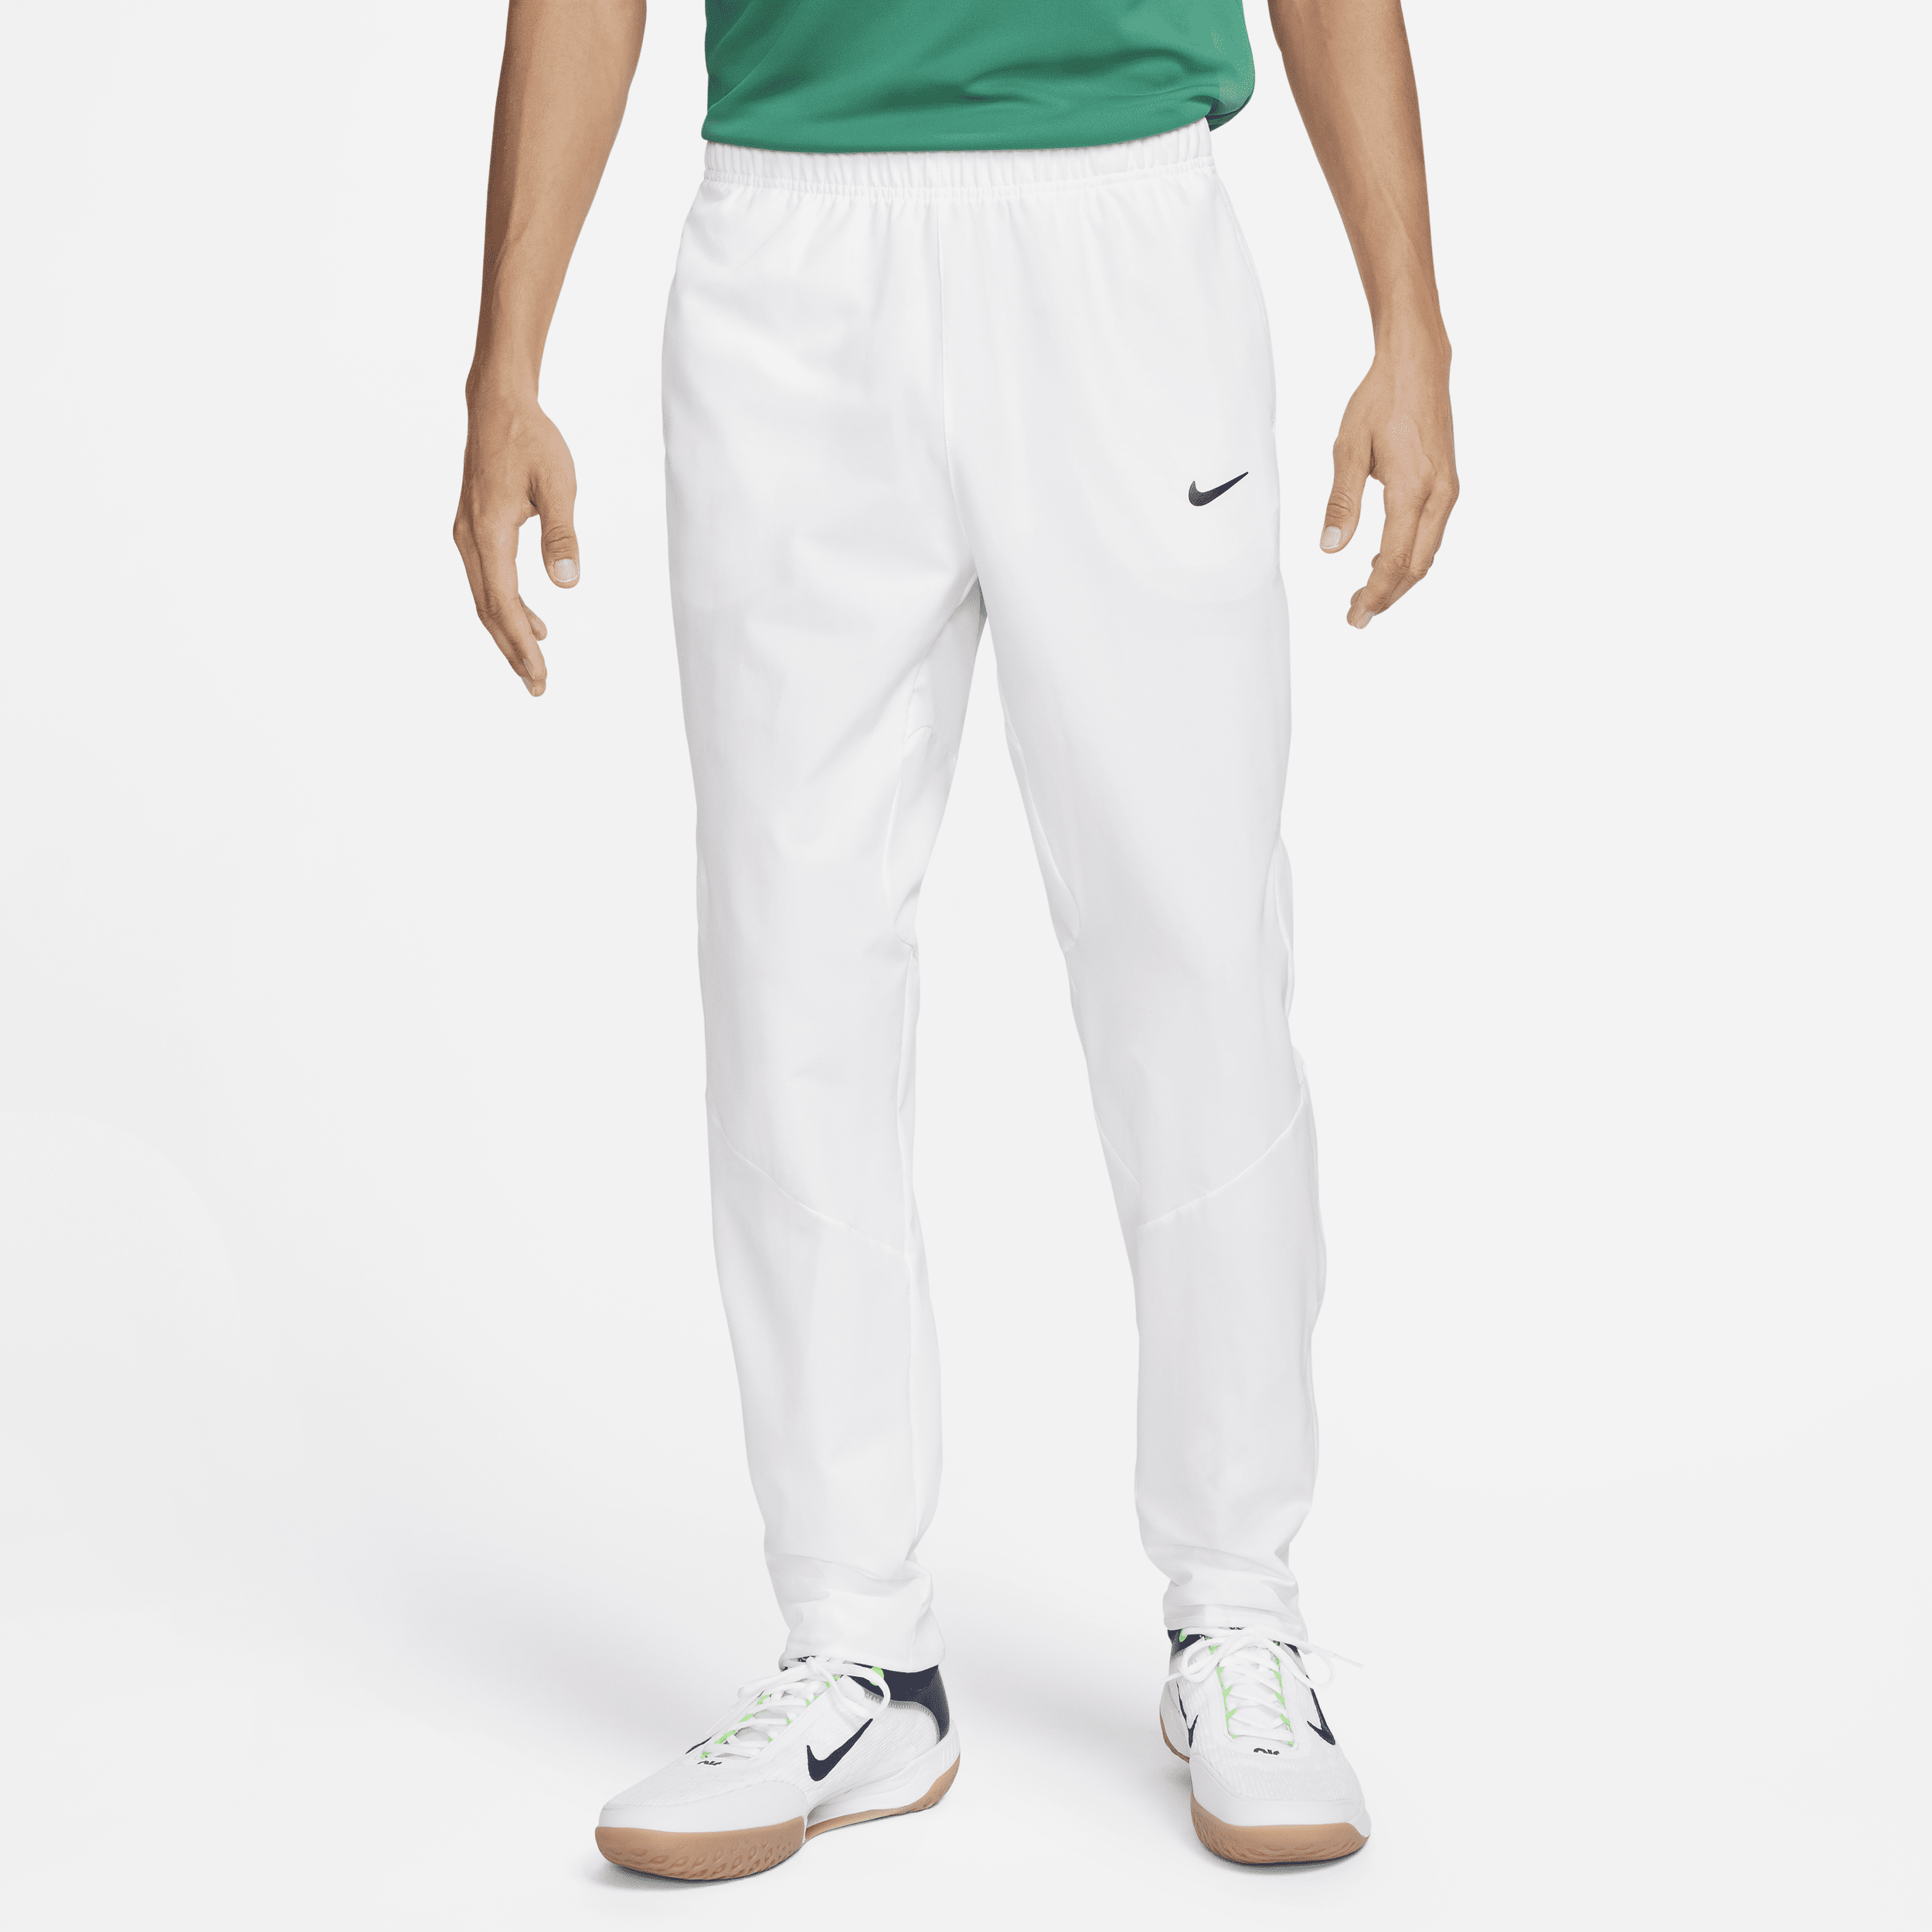 NikeCourt Advantage Dri-FIT tennisbroek voor heren - Wit